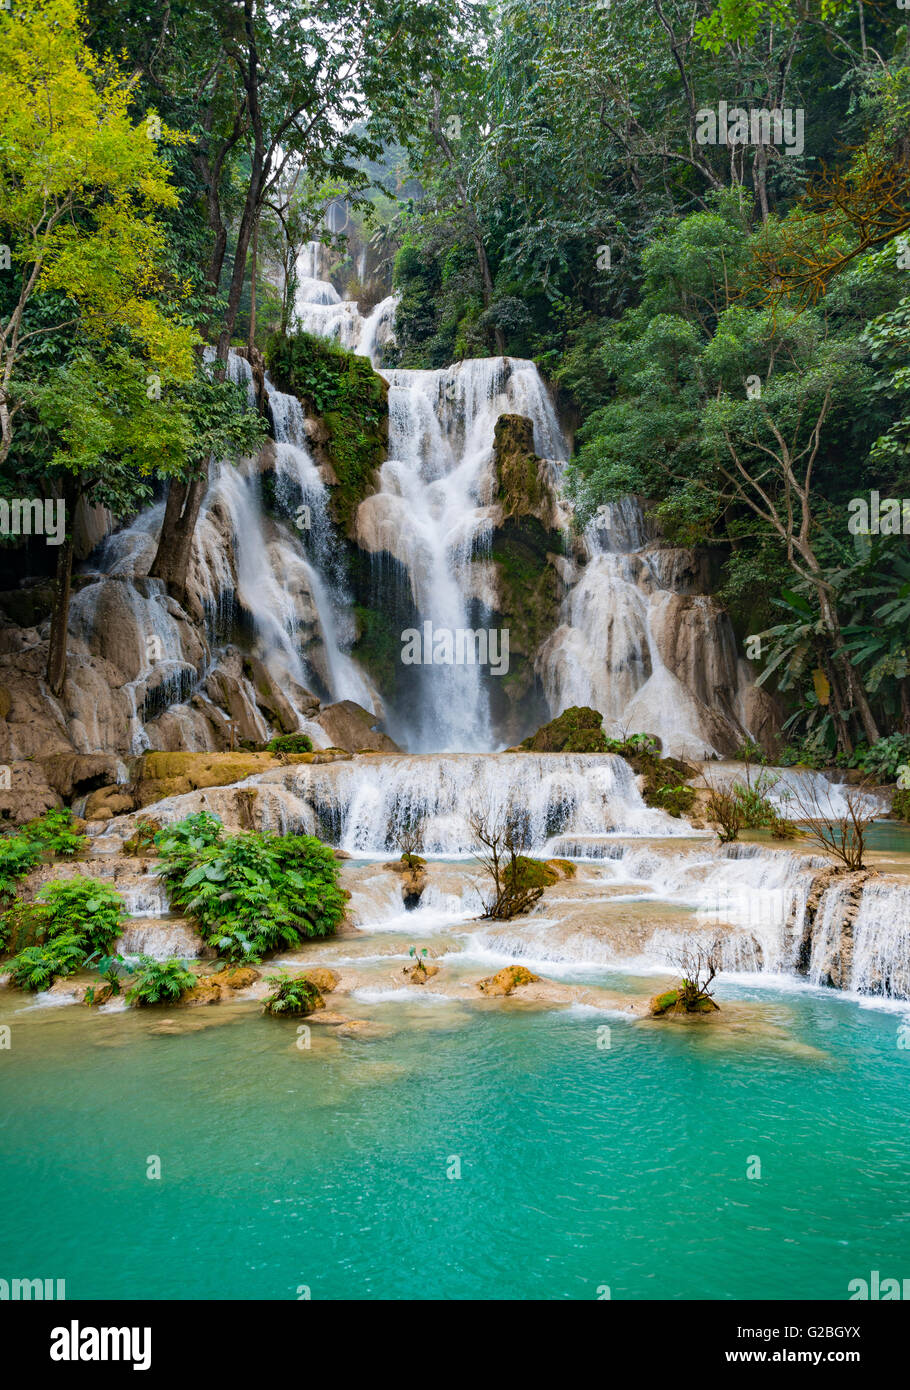 Big Waterfall with cascades, Tat Kuang Si Waterfalls, Luang Prabang, Luang Prabang Province, Laos Stock Photo